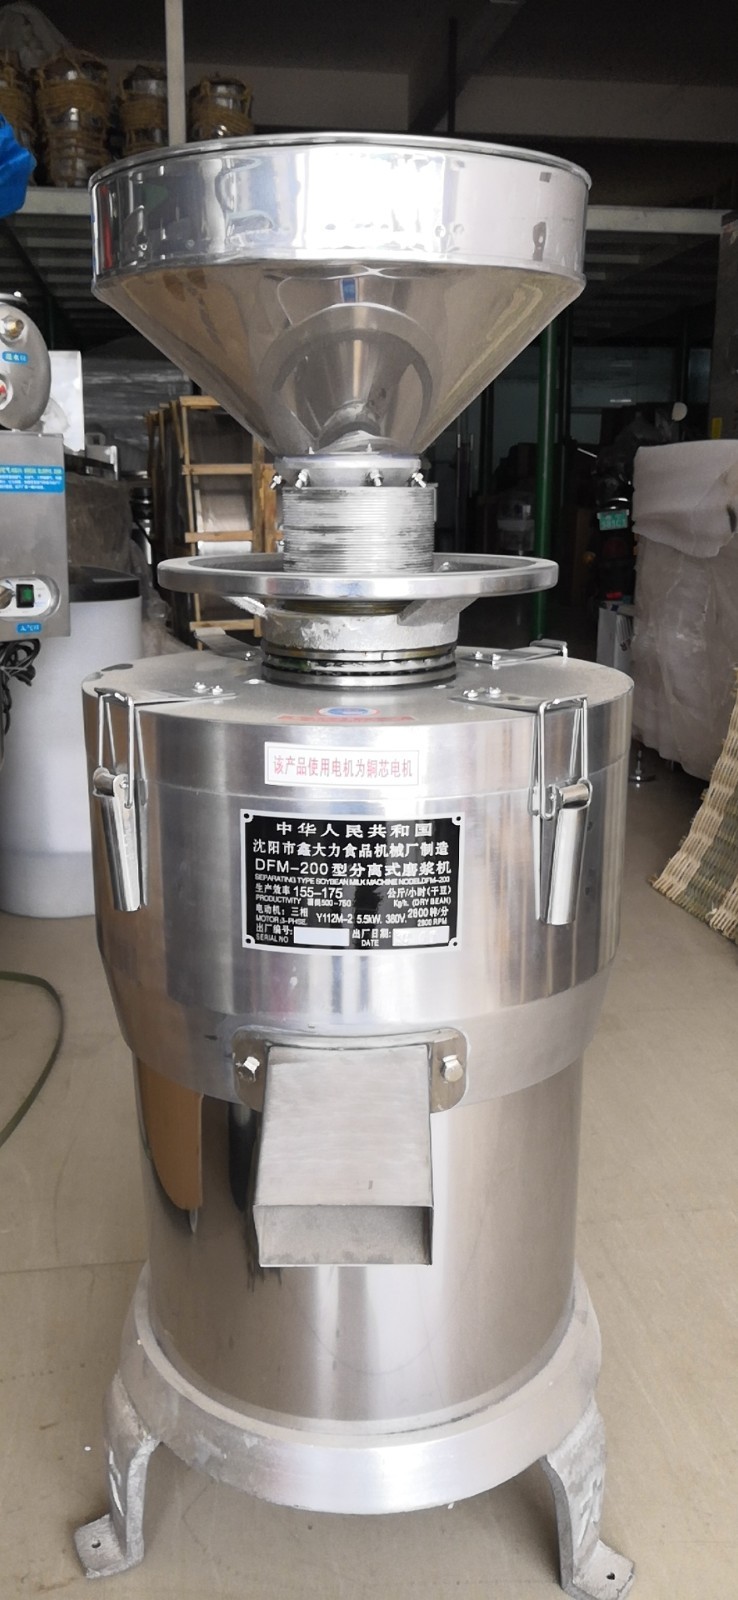 dfm-200型分离式磨浆机